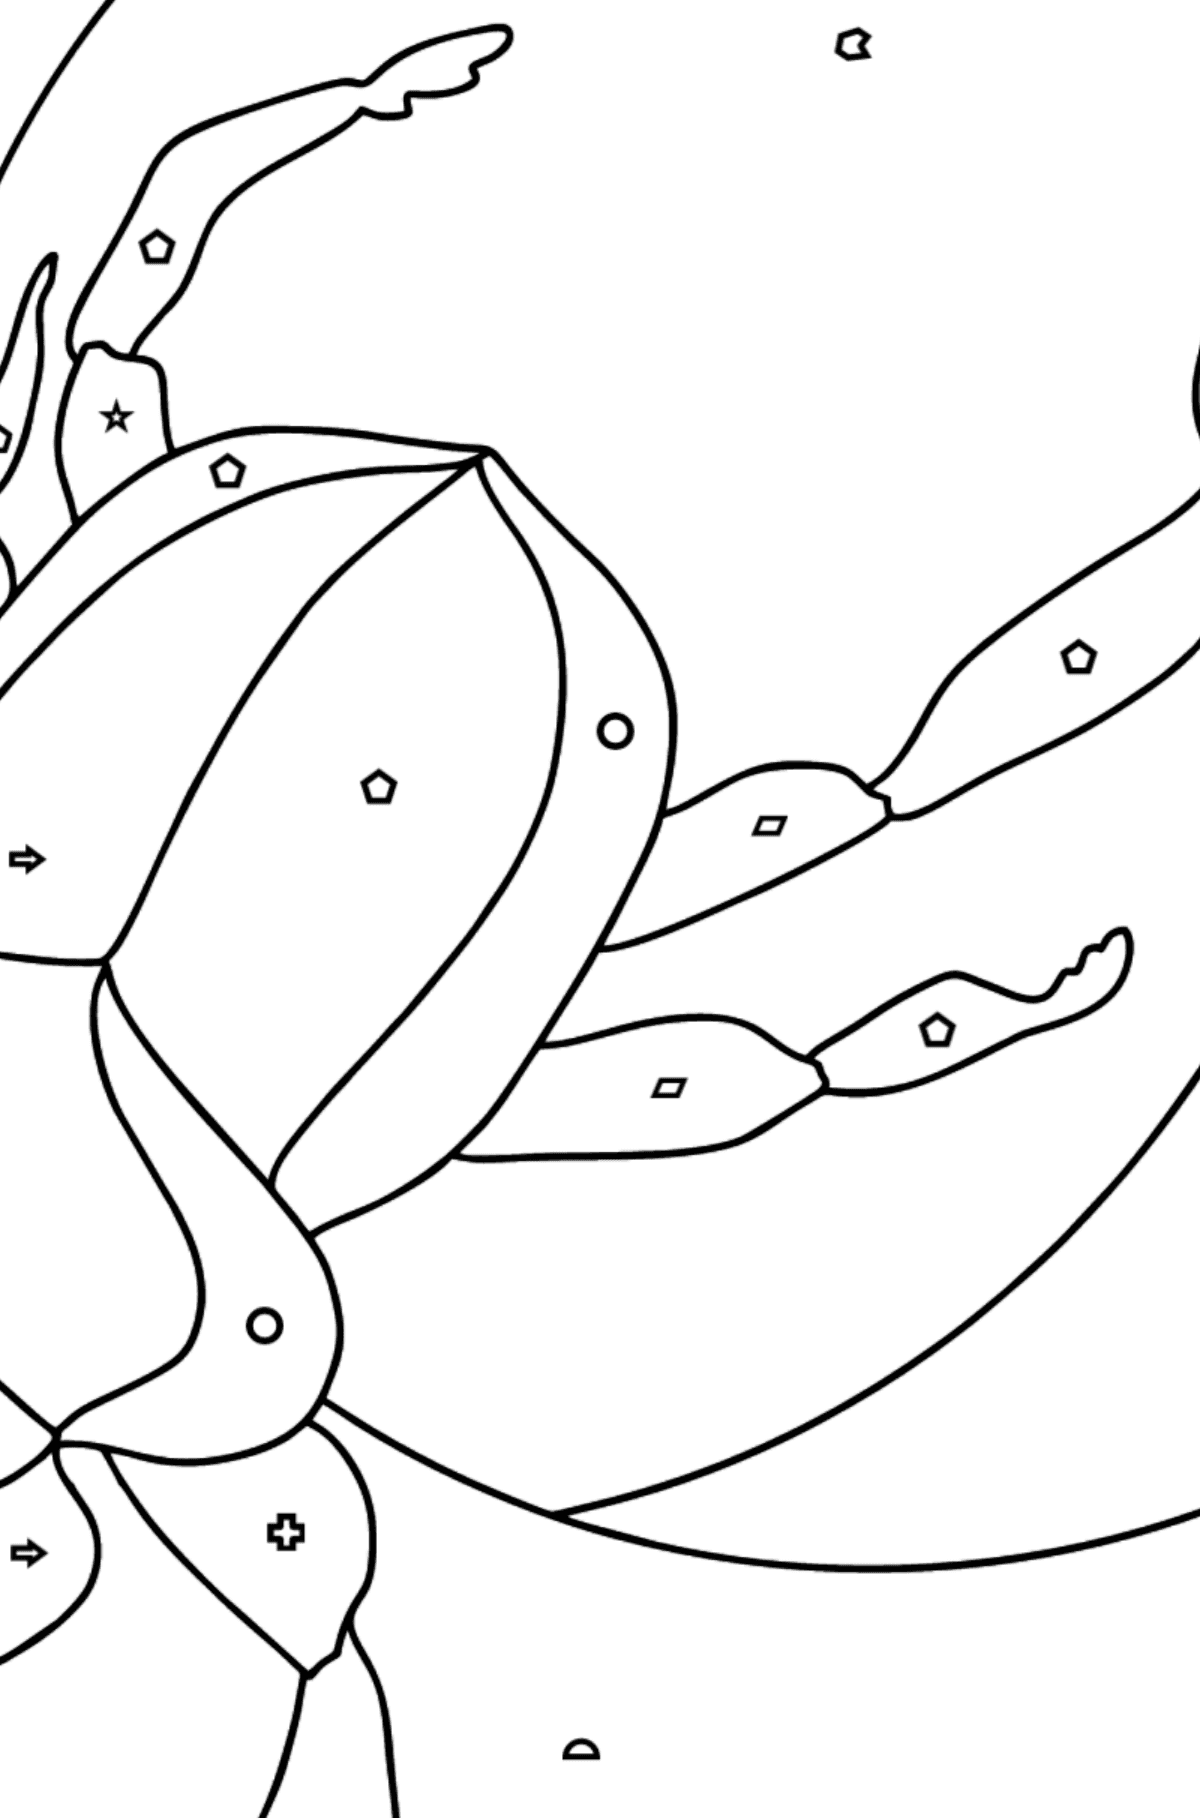 Desenho de escaravelhombolo para colorir (difícil) - Colorir por Formas Geométricas para Crianças